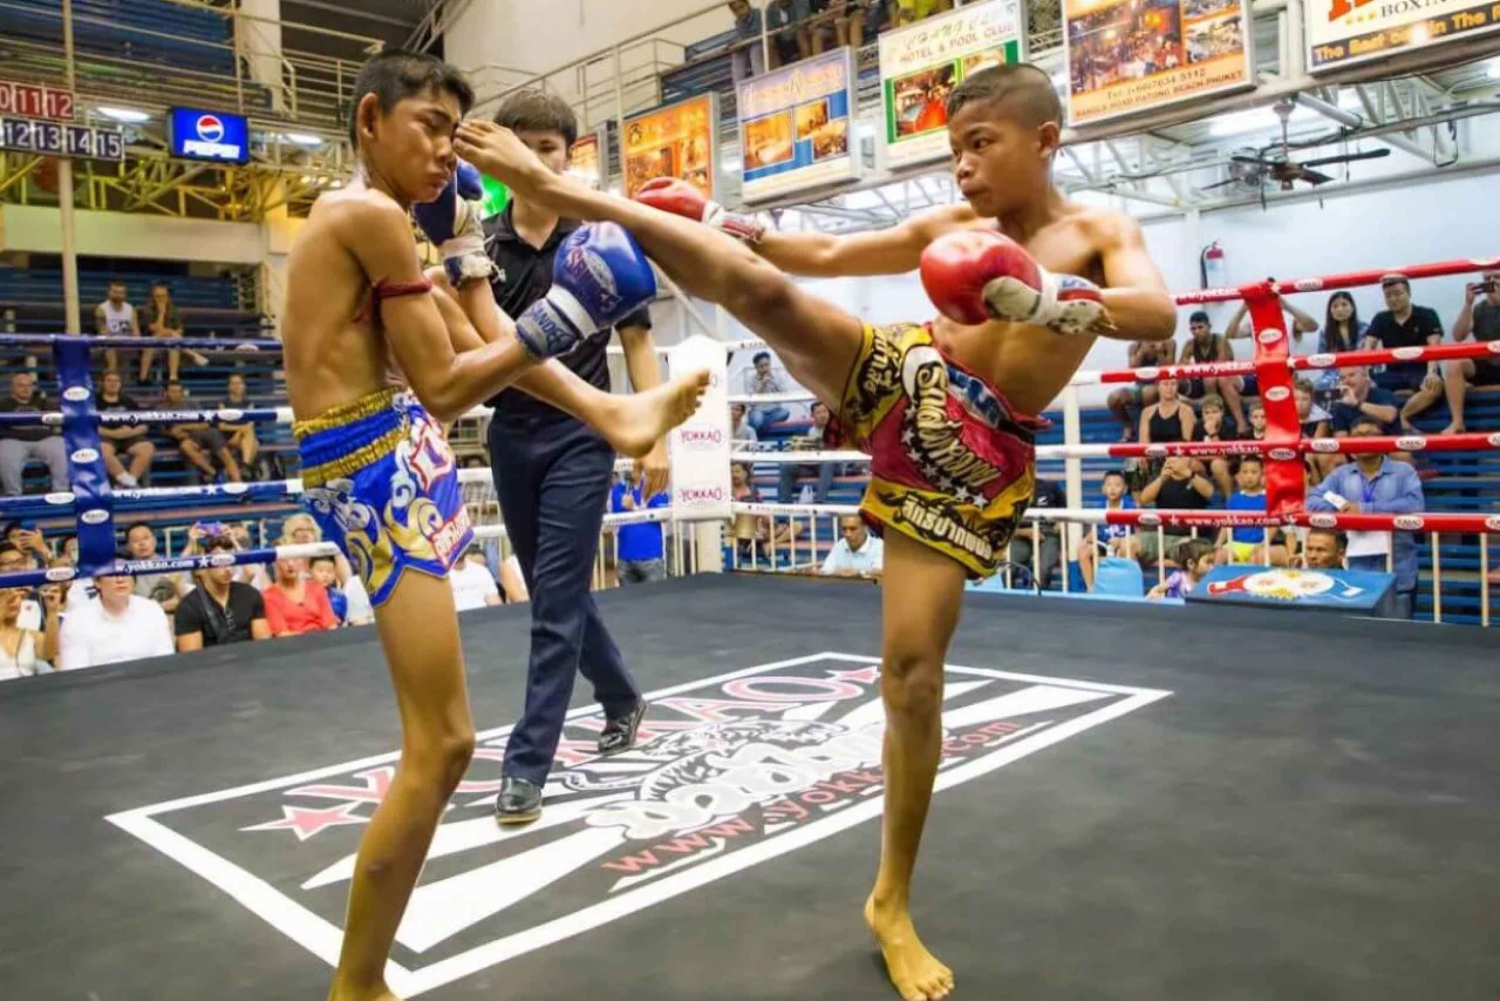 Les plaisirs de la vie nocturne à Phuket : Bangla Road et la boxe thaïlandaise